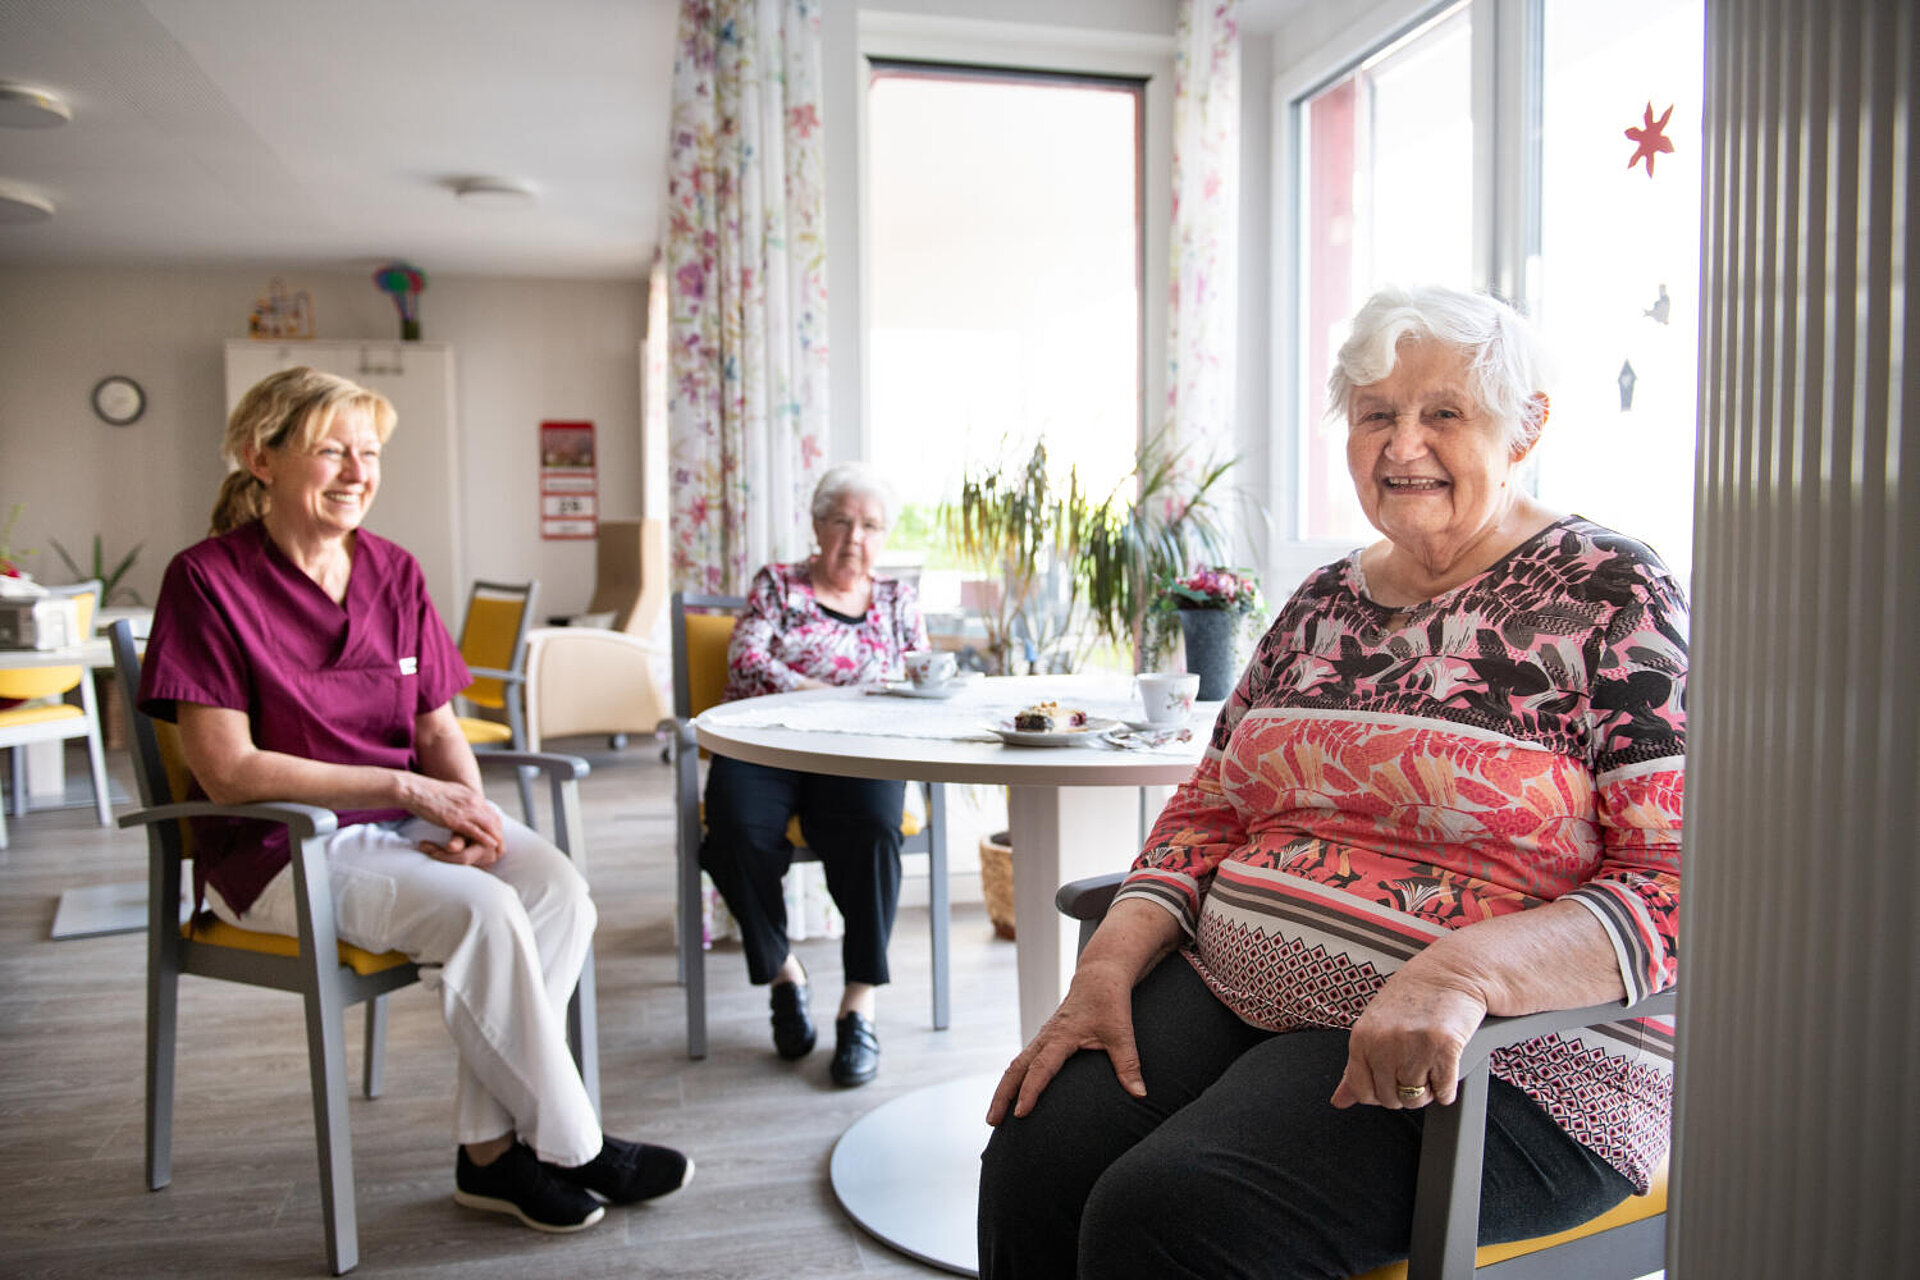 In der rechten Fensternische am runden Tisch mit Blumen sitzen zwei ältere Damen beim Kaffeetrinken. Ein jüngere Betreuerin sitzt - ein klein wenig abgesetzt - herzhaft lachend dabei.